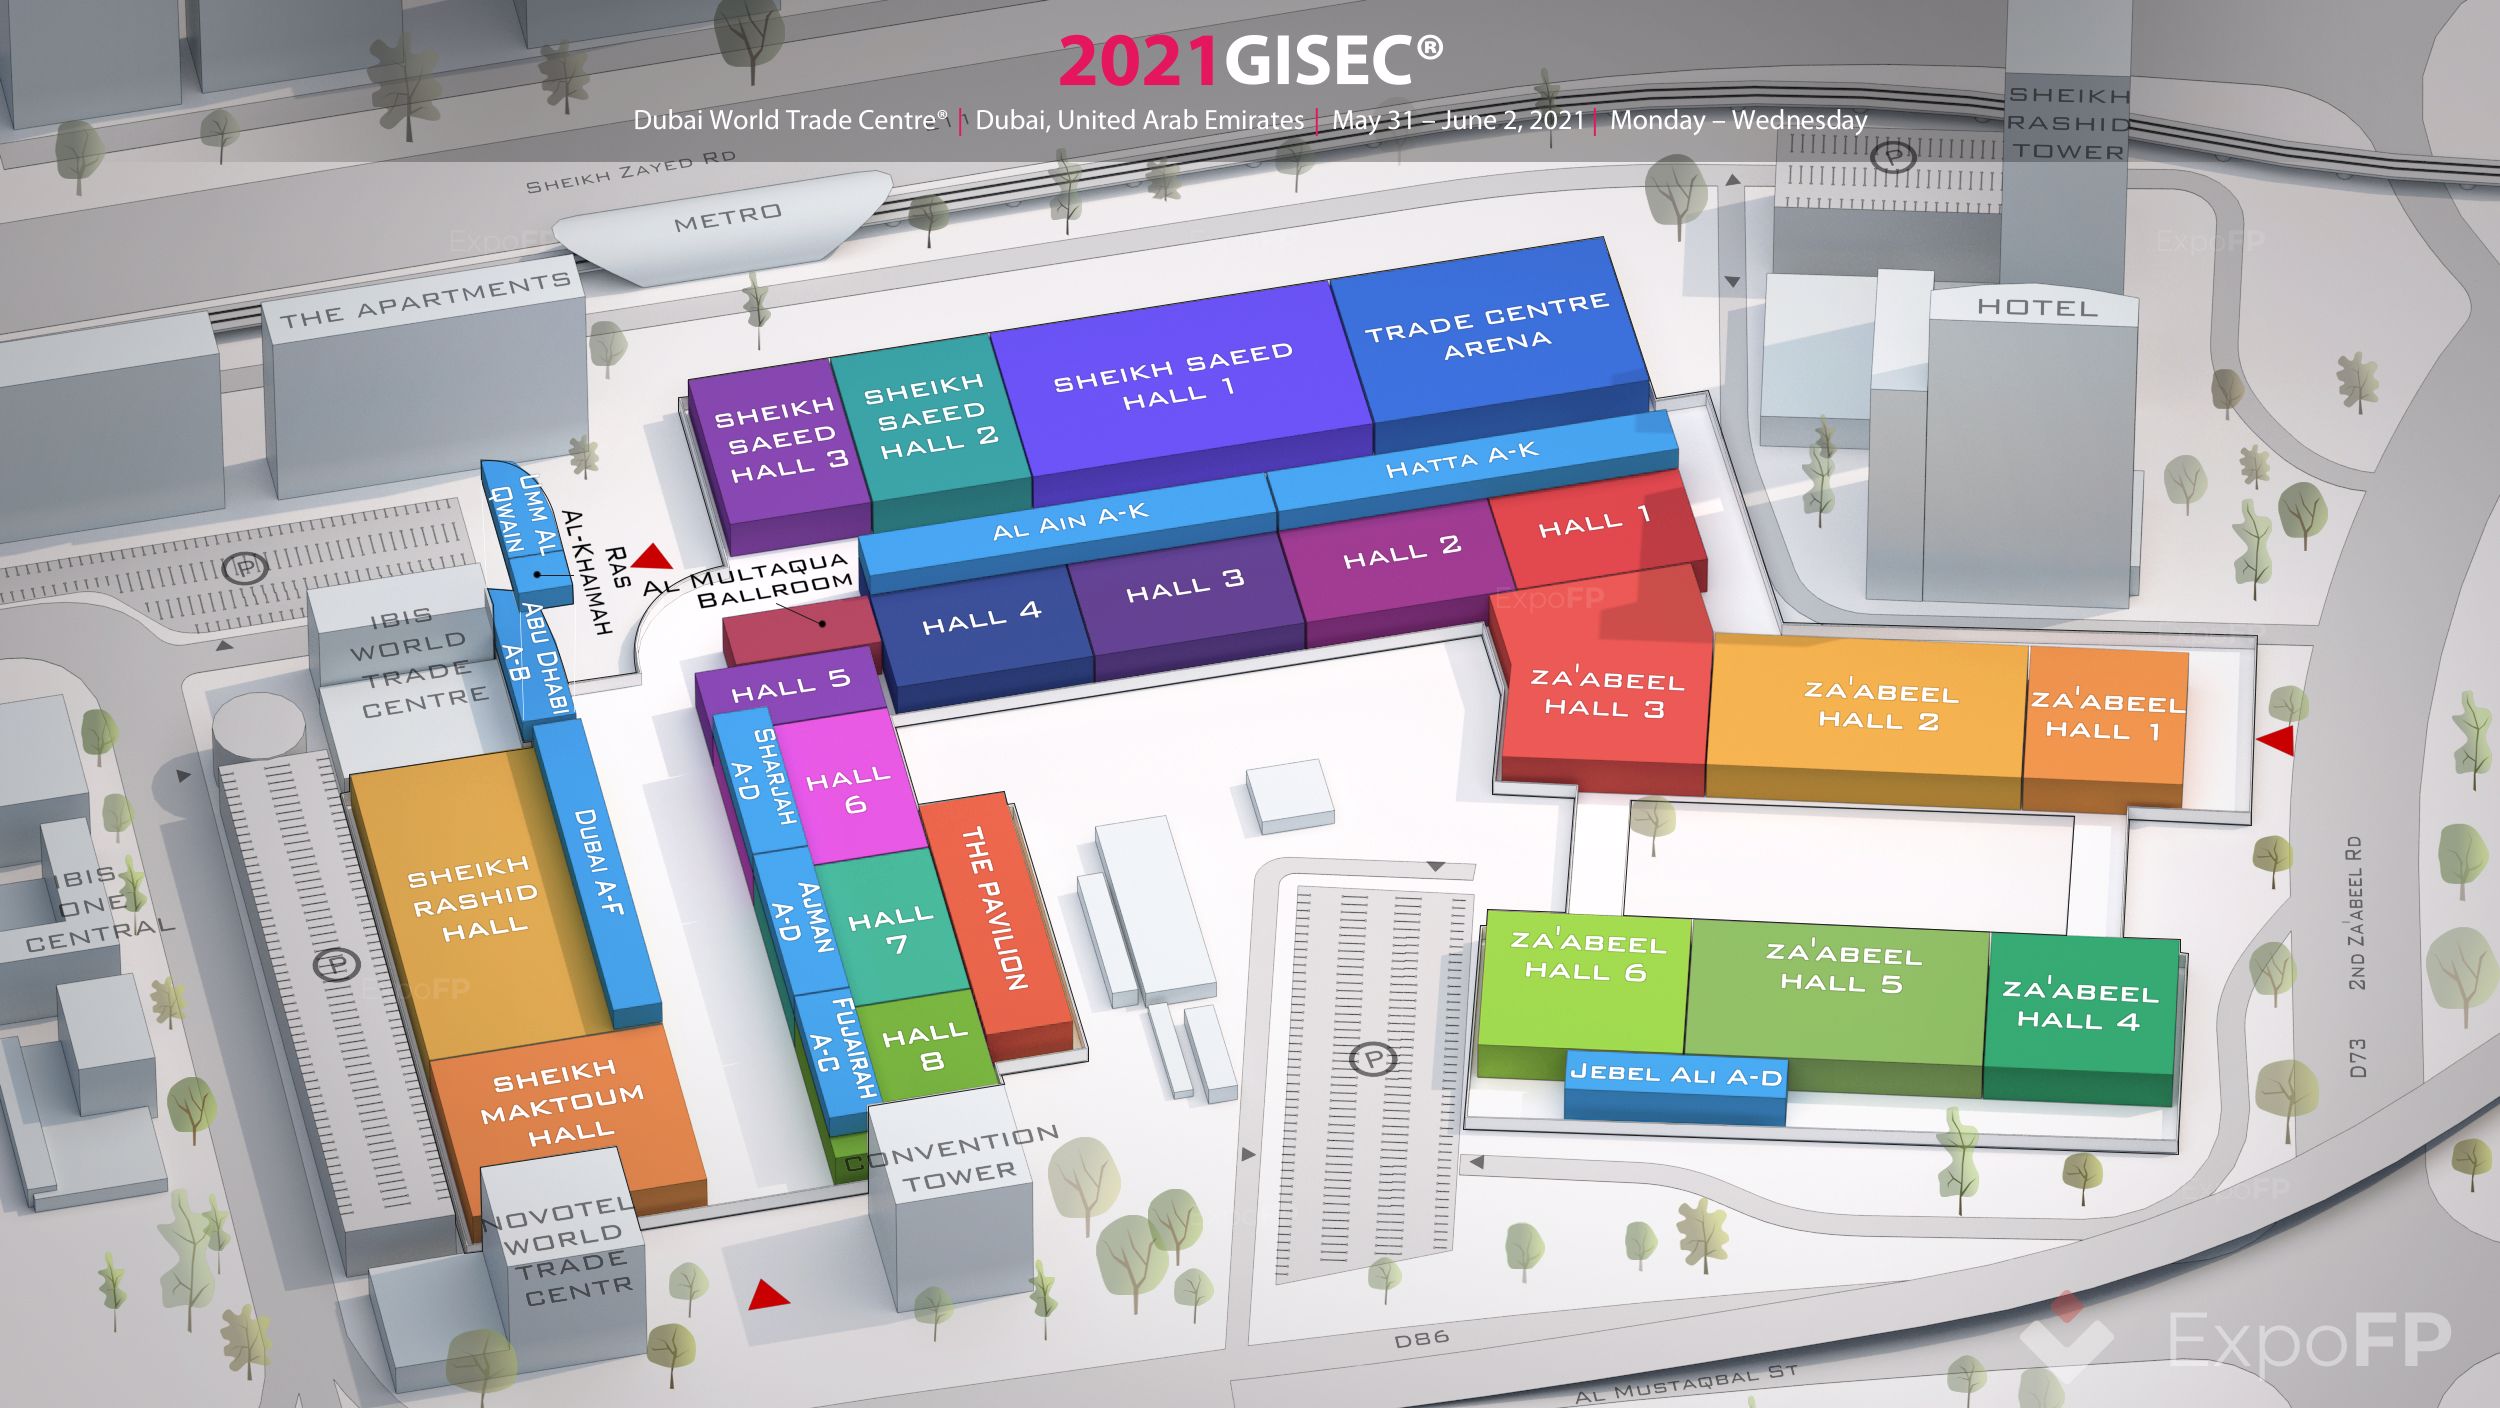 GISEC 2021 in Dubai World Trade Centre